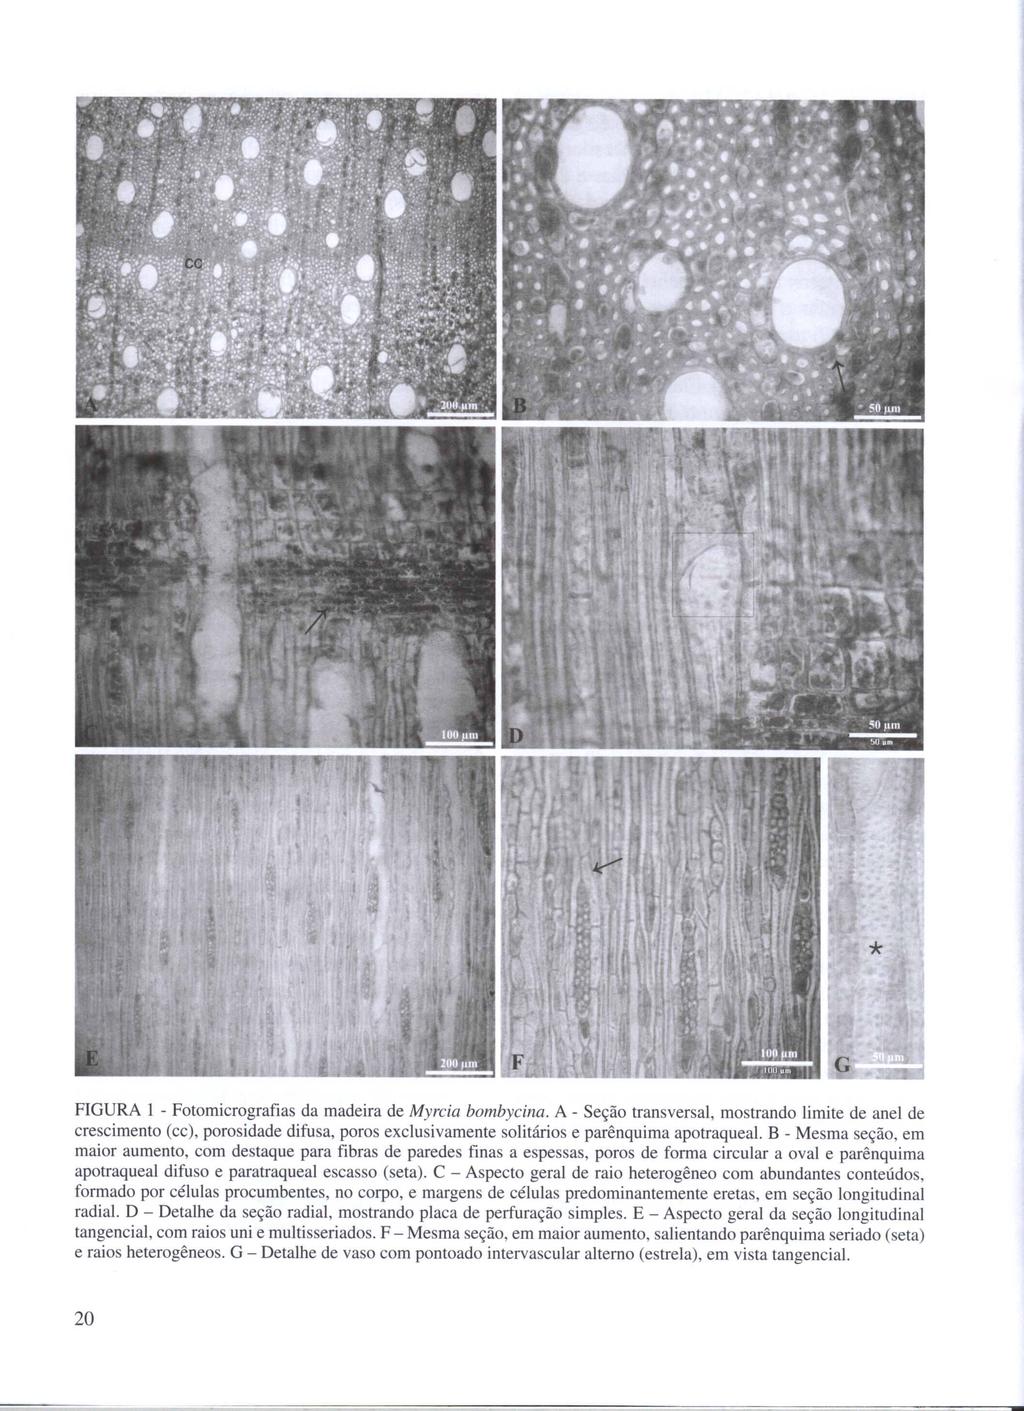 FIGURA I - Fotomicrografias da madeira de Myrcia bombycina.